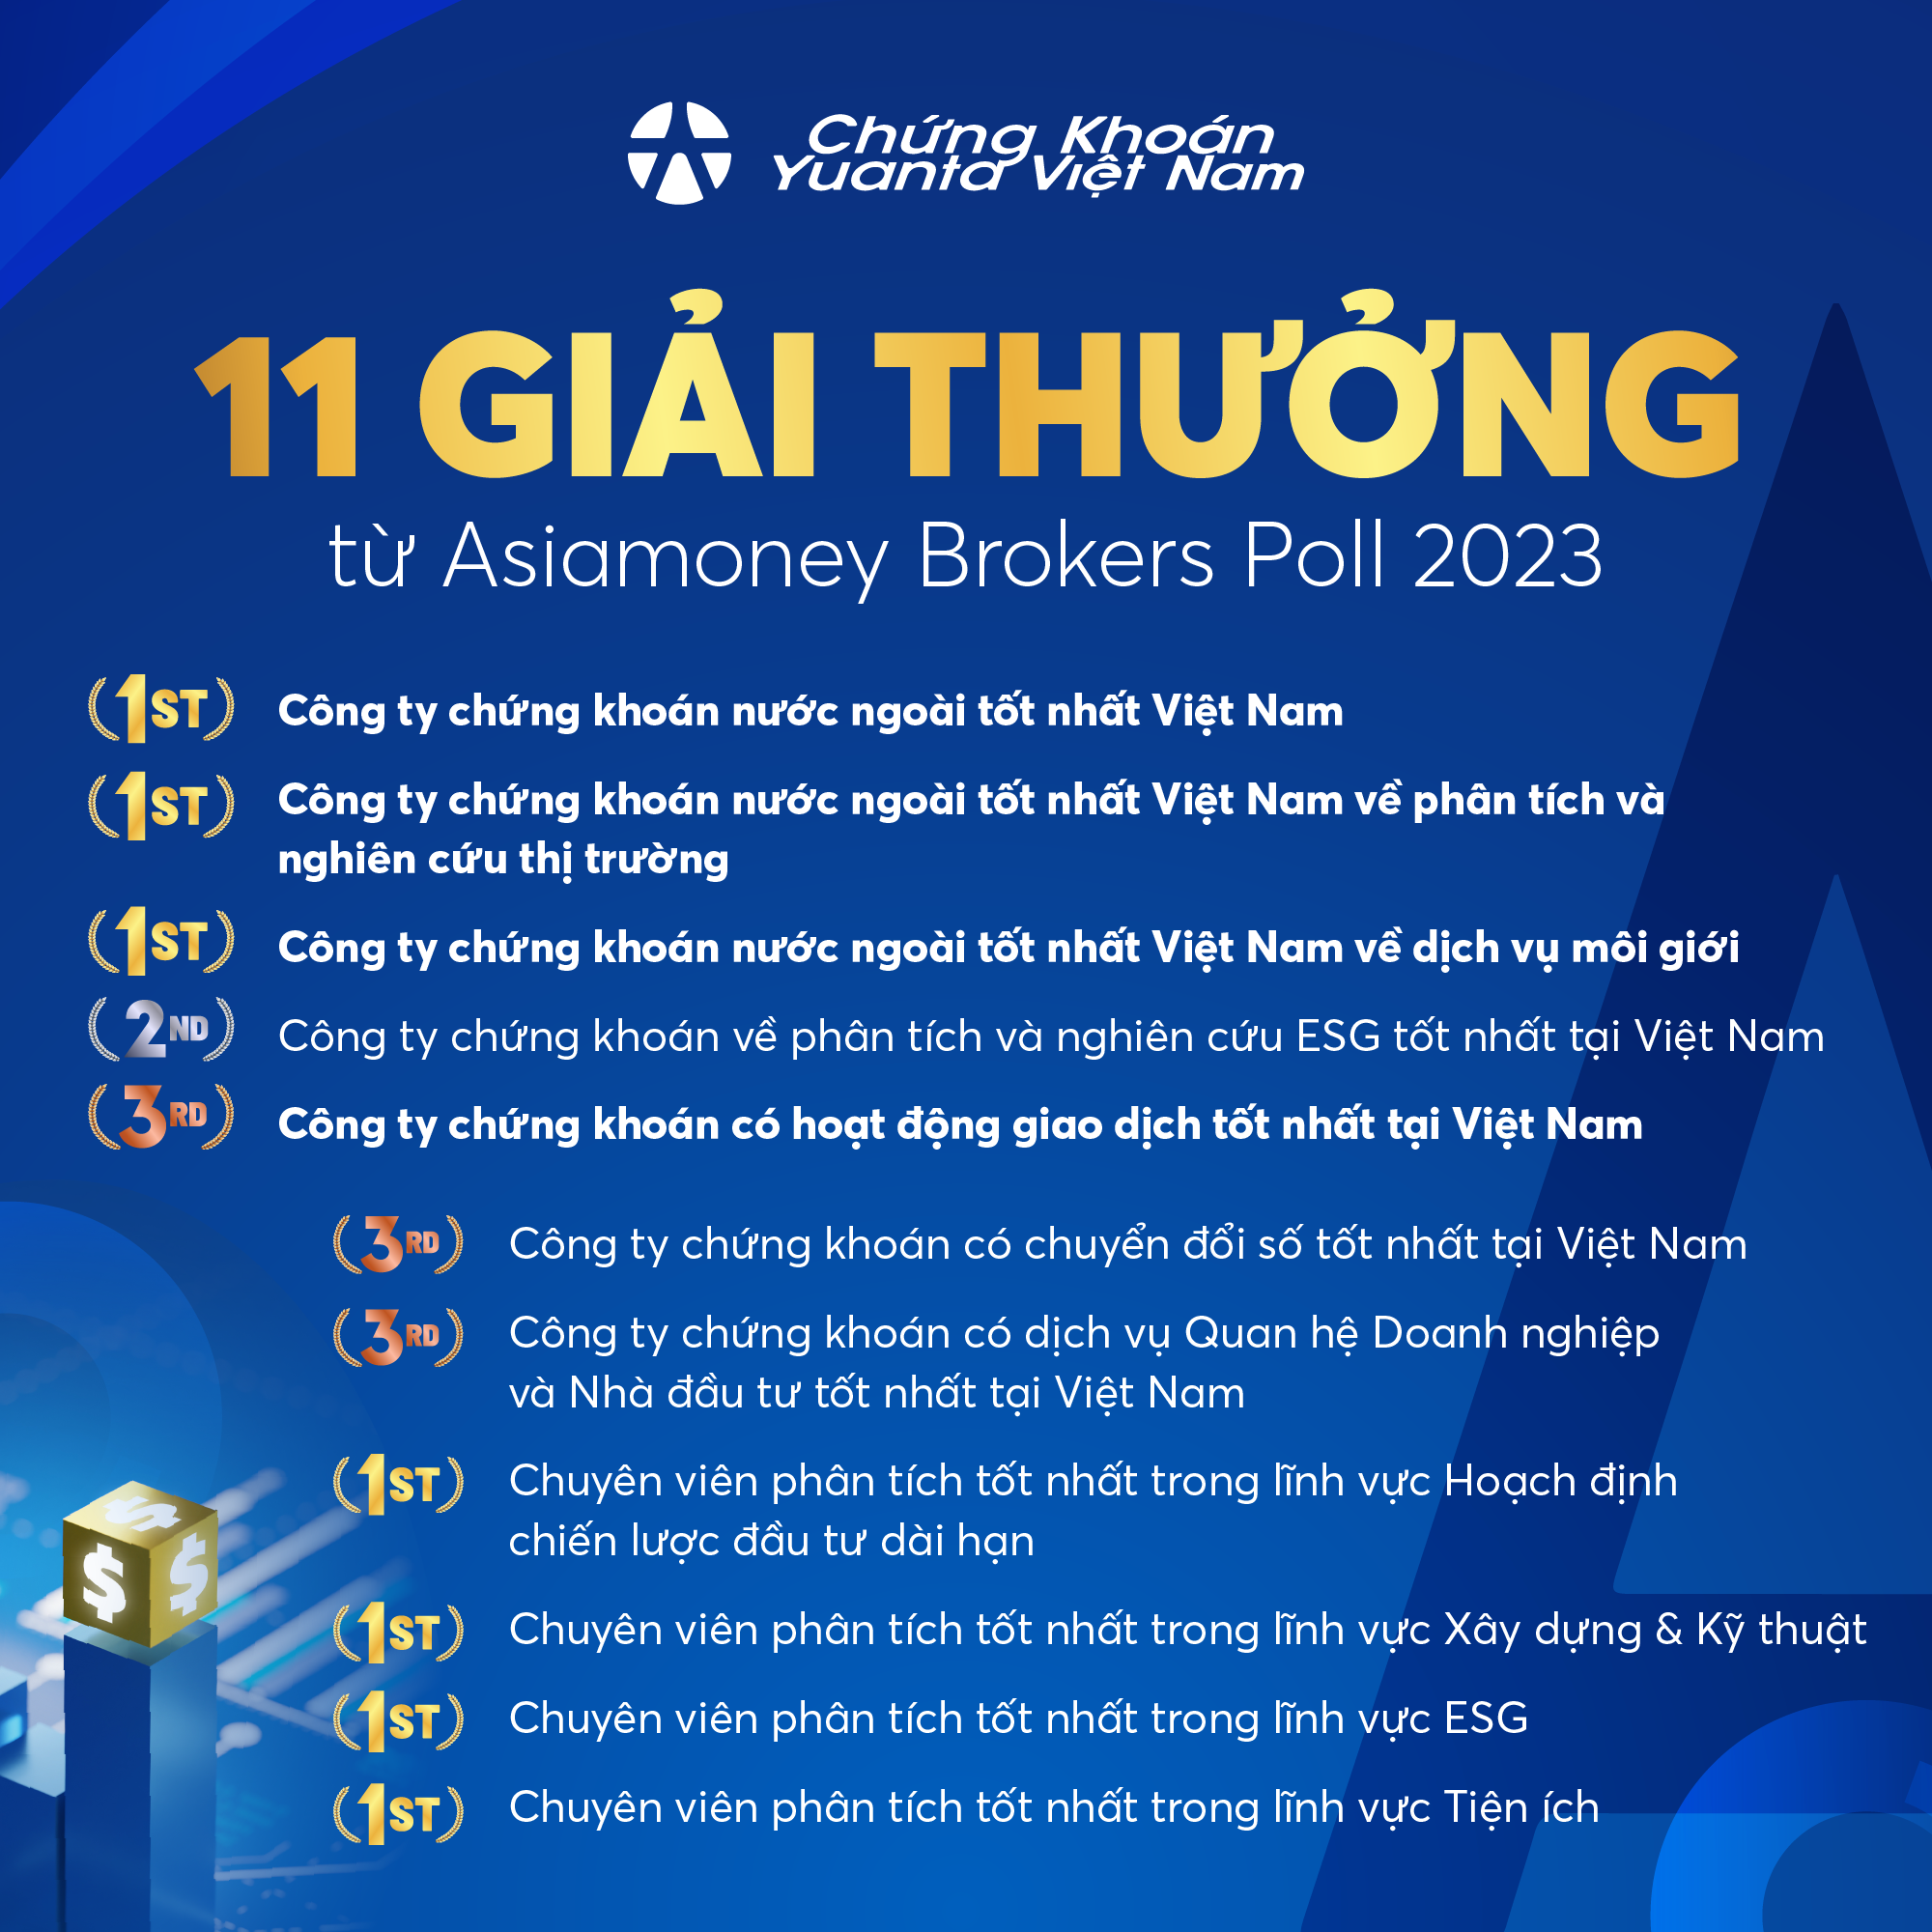 Yuanta Việt Nam nhận 11 giải thưởng tại Asiamoney Brokers Poll 2023